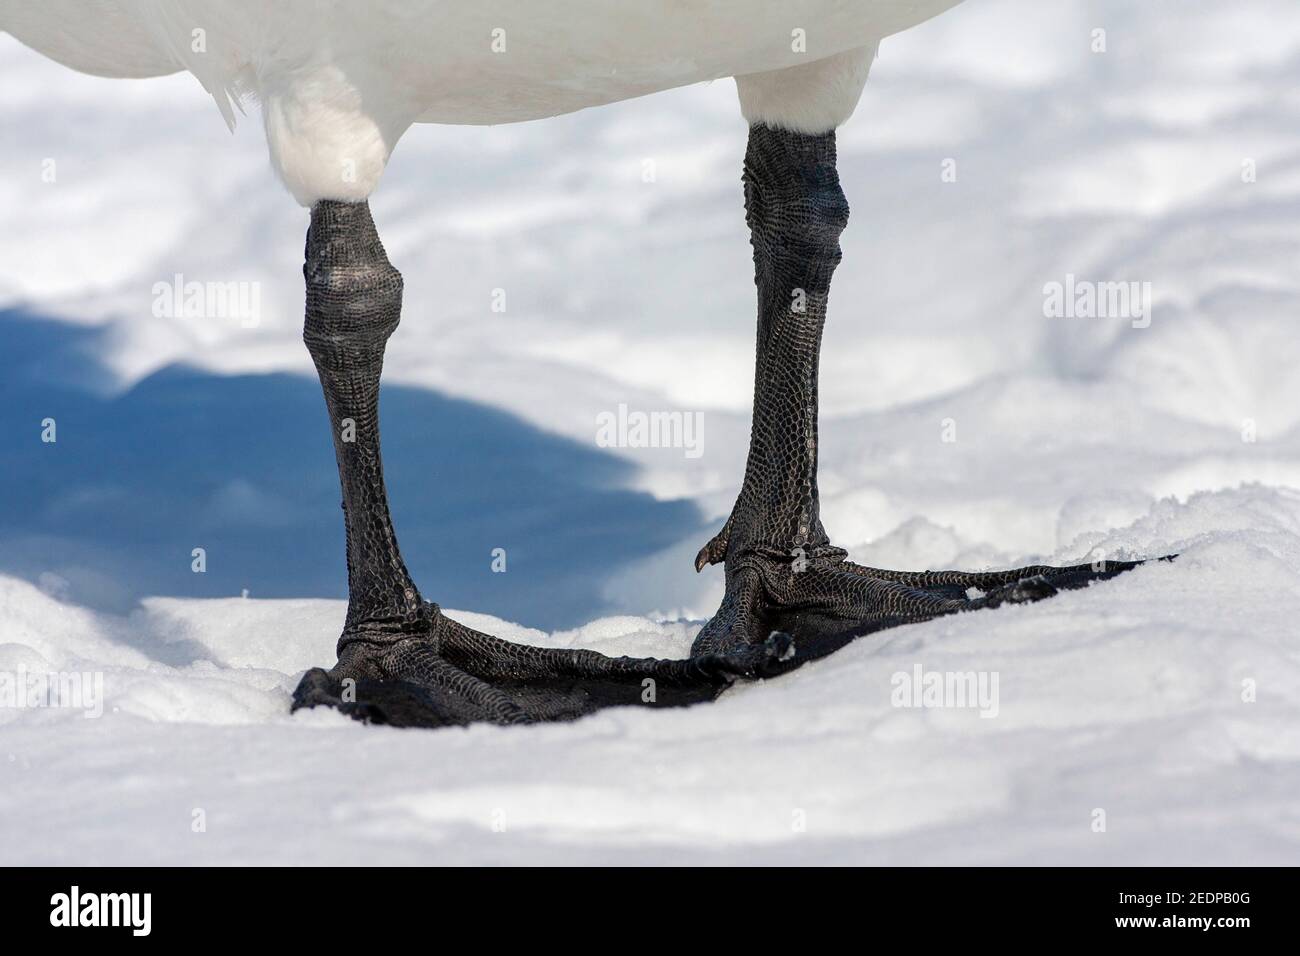 Cigno di whooper (Cygnus cygnus), Chiosaggio dei piedi di un cigno di Whooper, in piedi nella neve, Giappone, Hokkaido Foto Stock